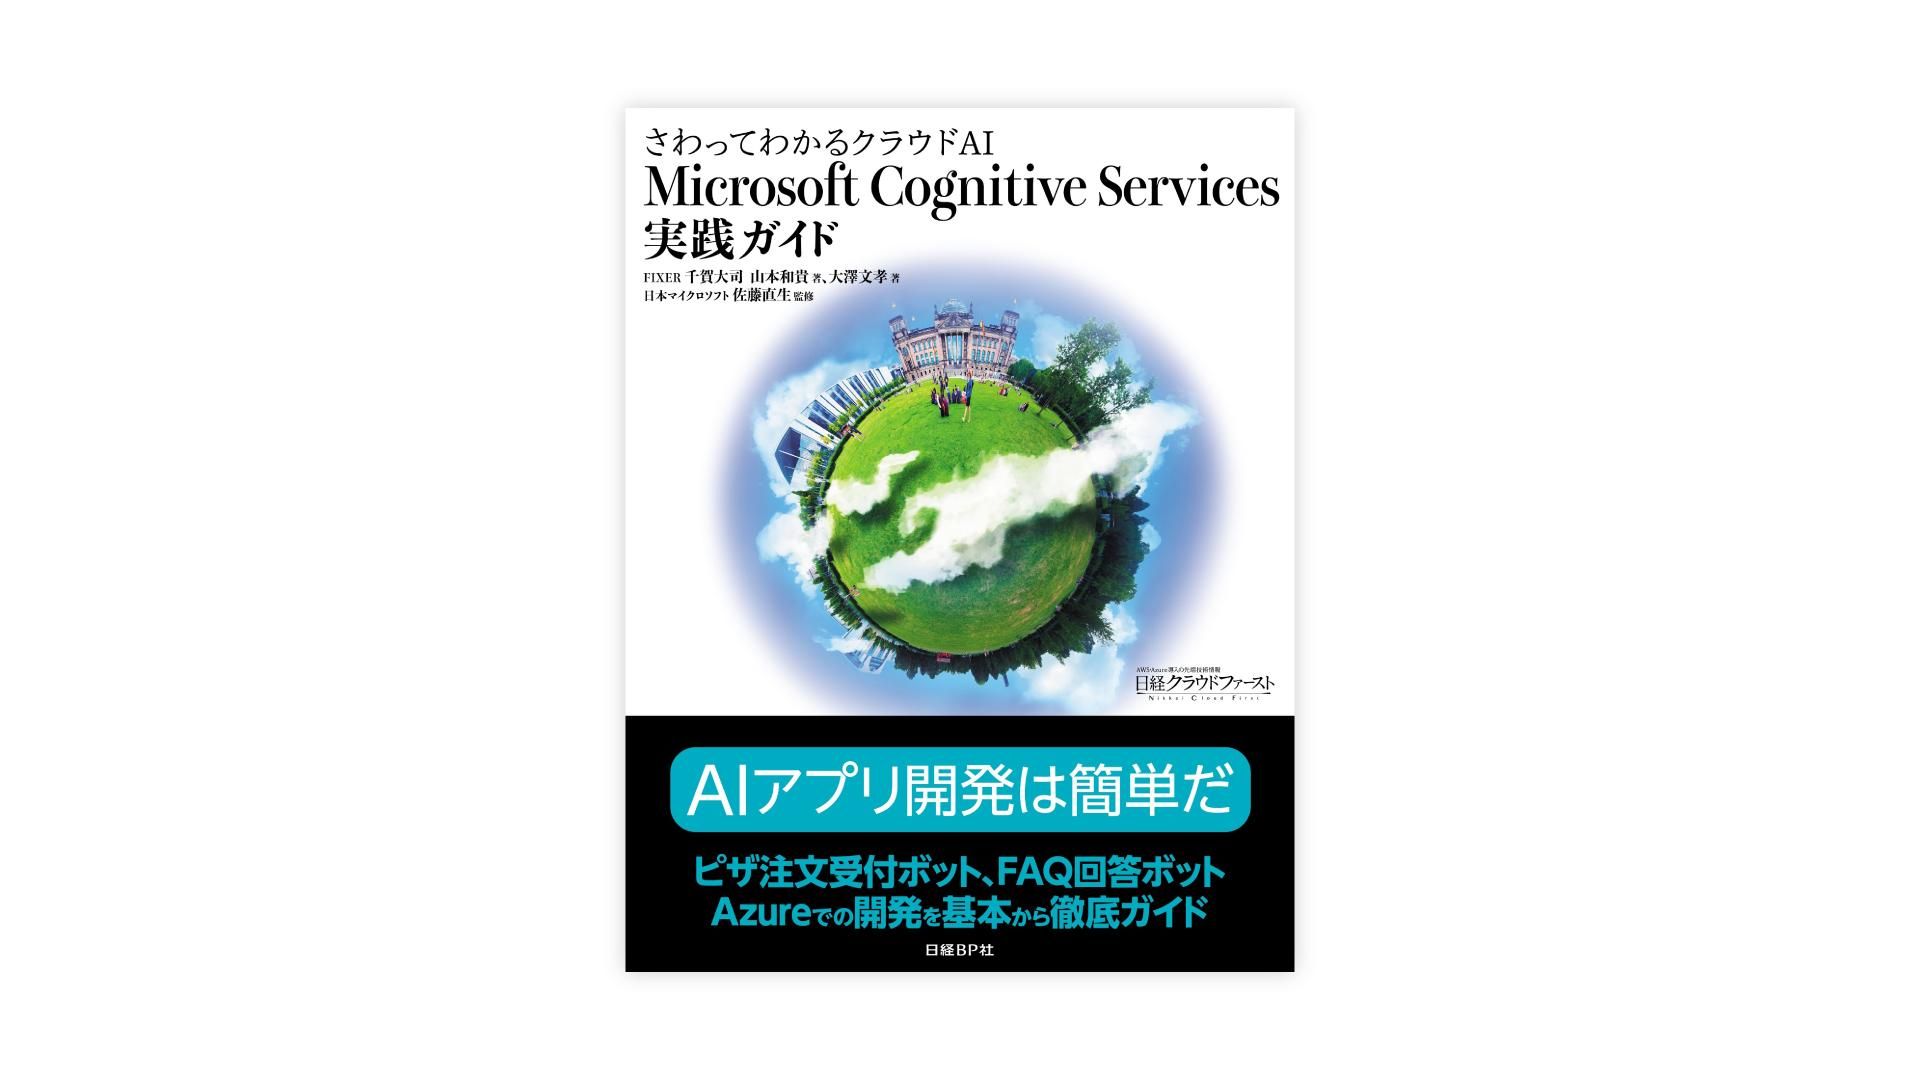 2017_1215_001_publication_ai_microsoft_cognitive_services_guide_001.jpg